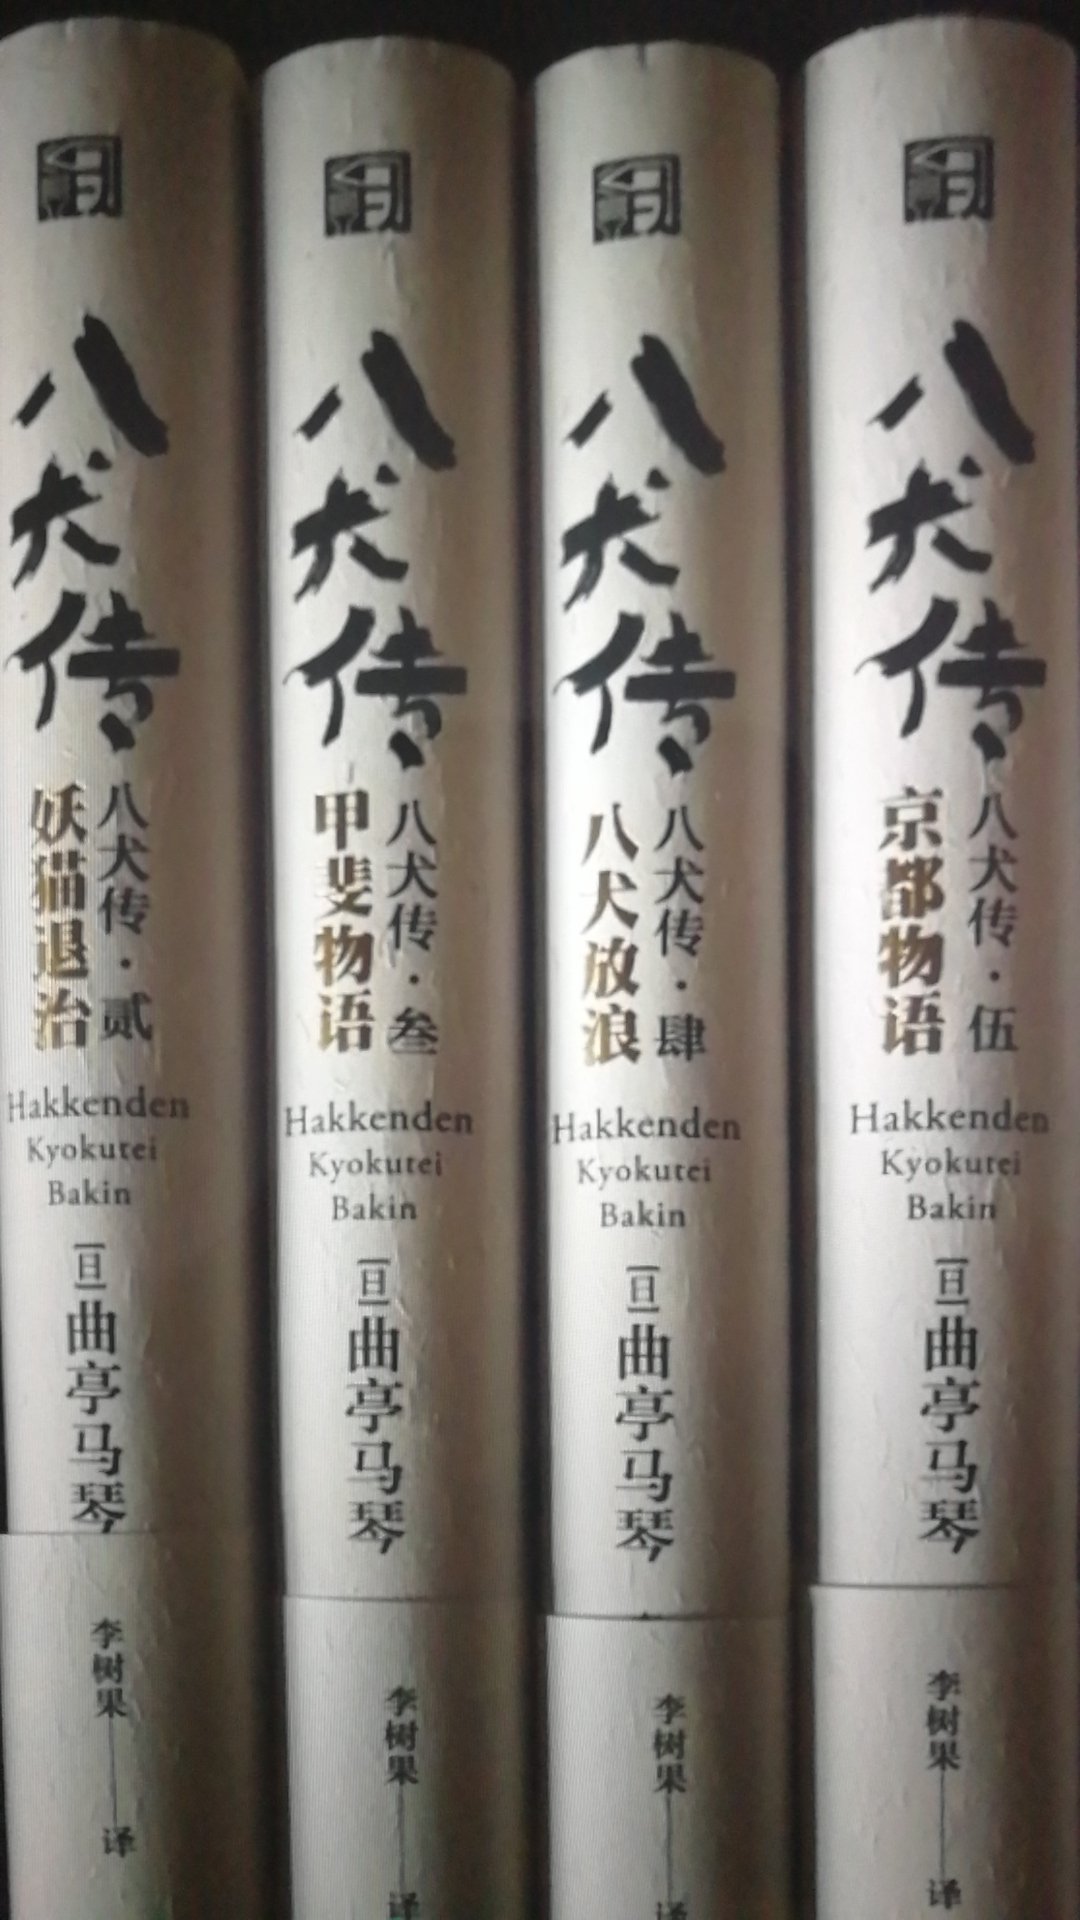 对日本及历史和文学都有点兴趣，看了评论这套书质量不错，又赶上促销就入手了。还没来得及看，等有时间了慢慢读。